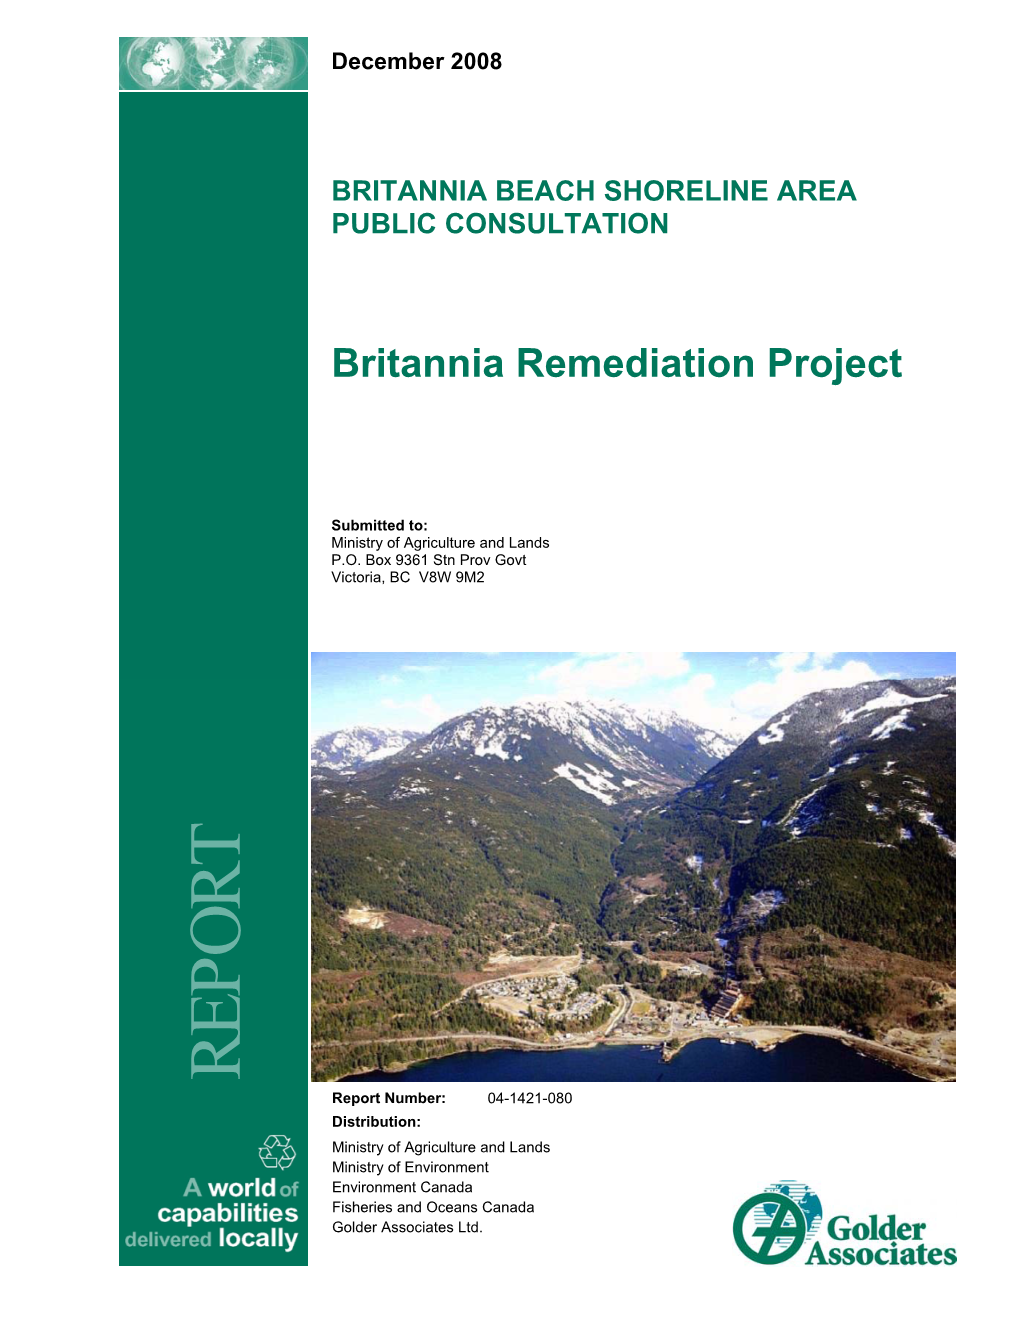 Britannia Beach Shoreline Area Public Consultation